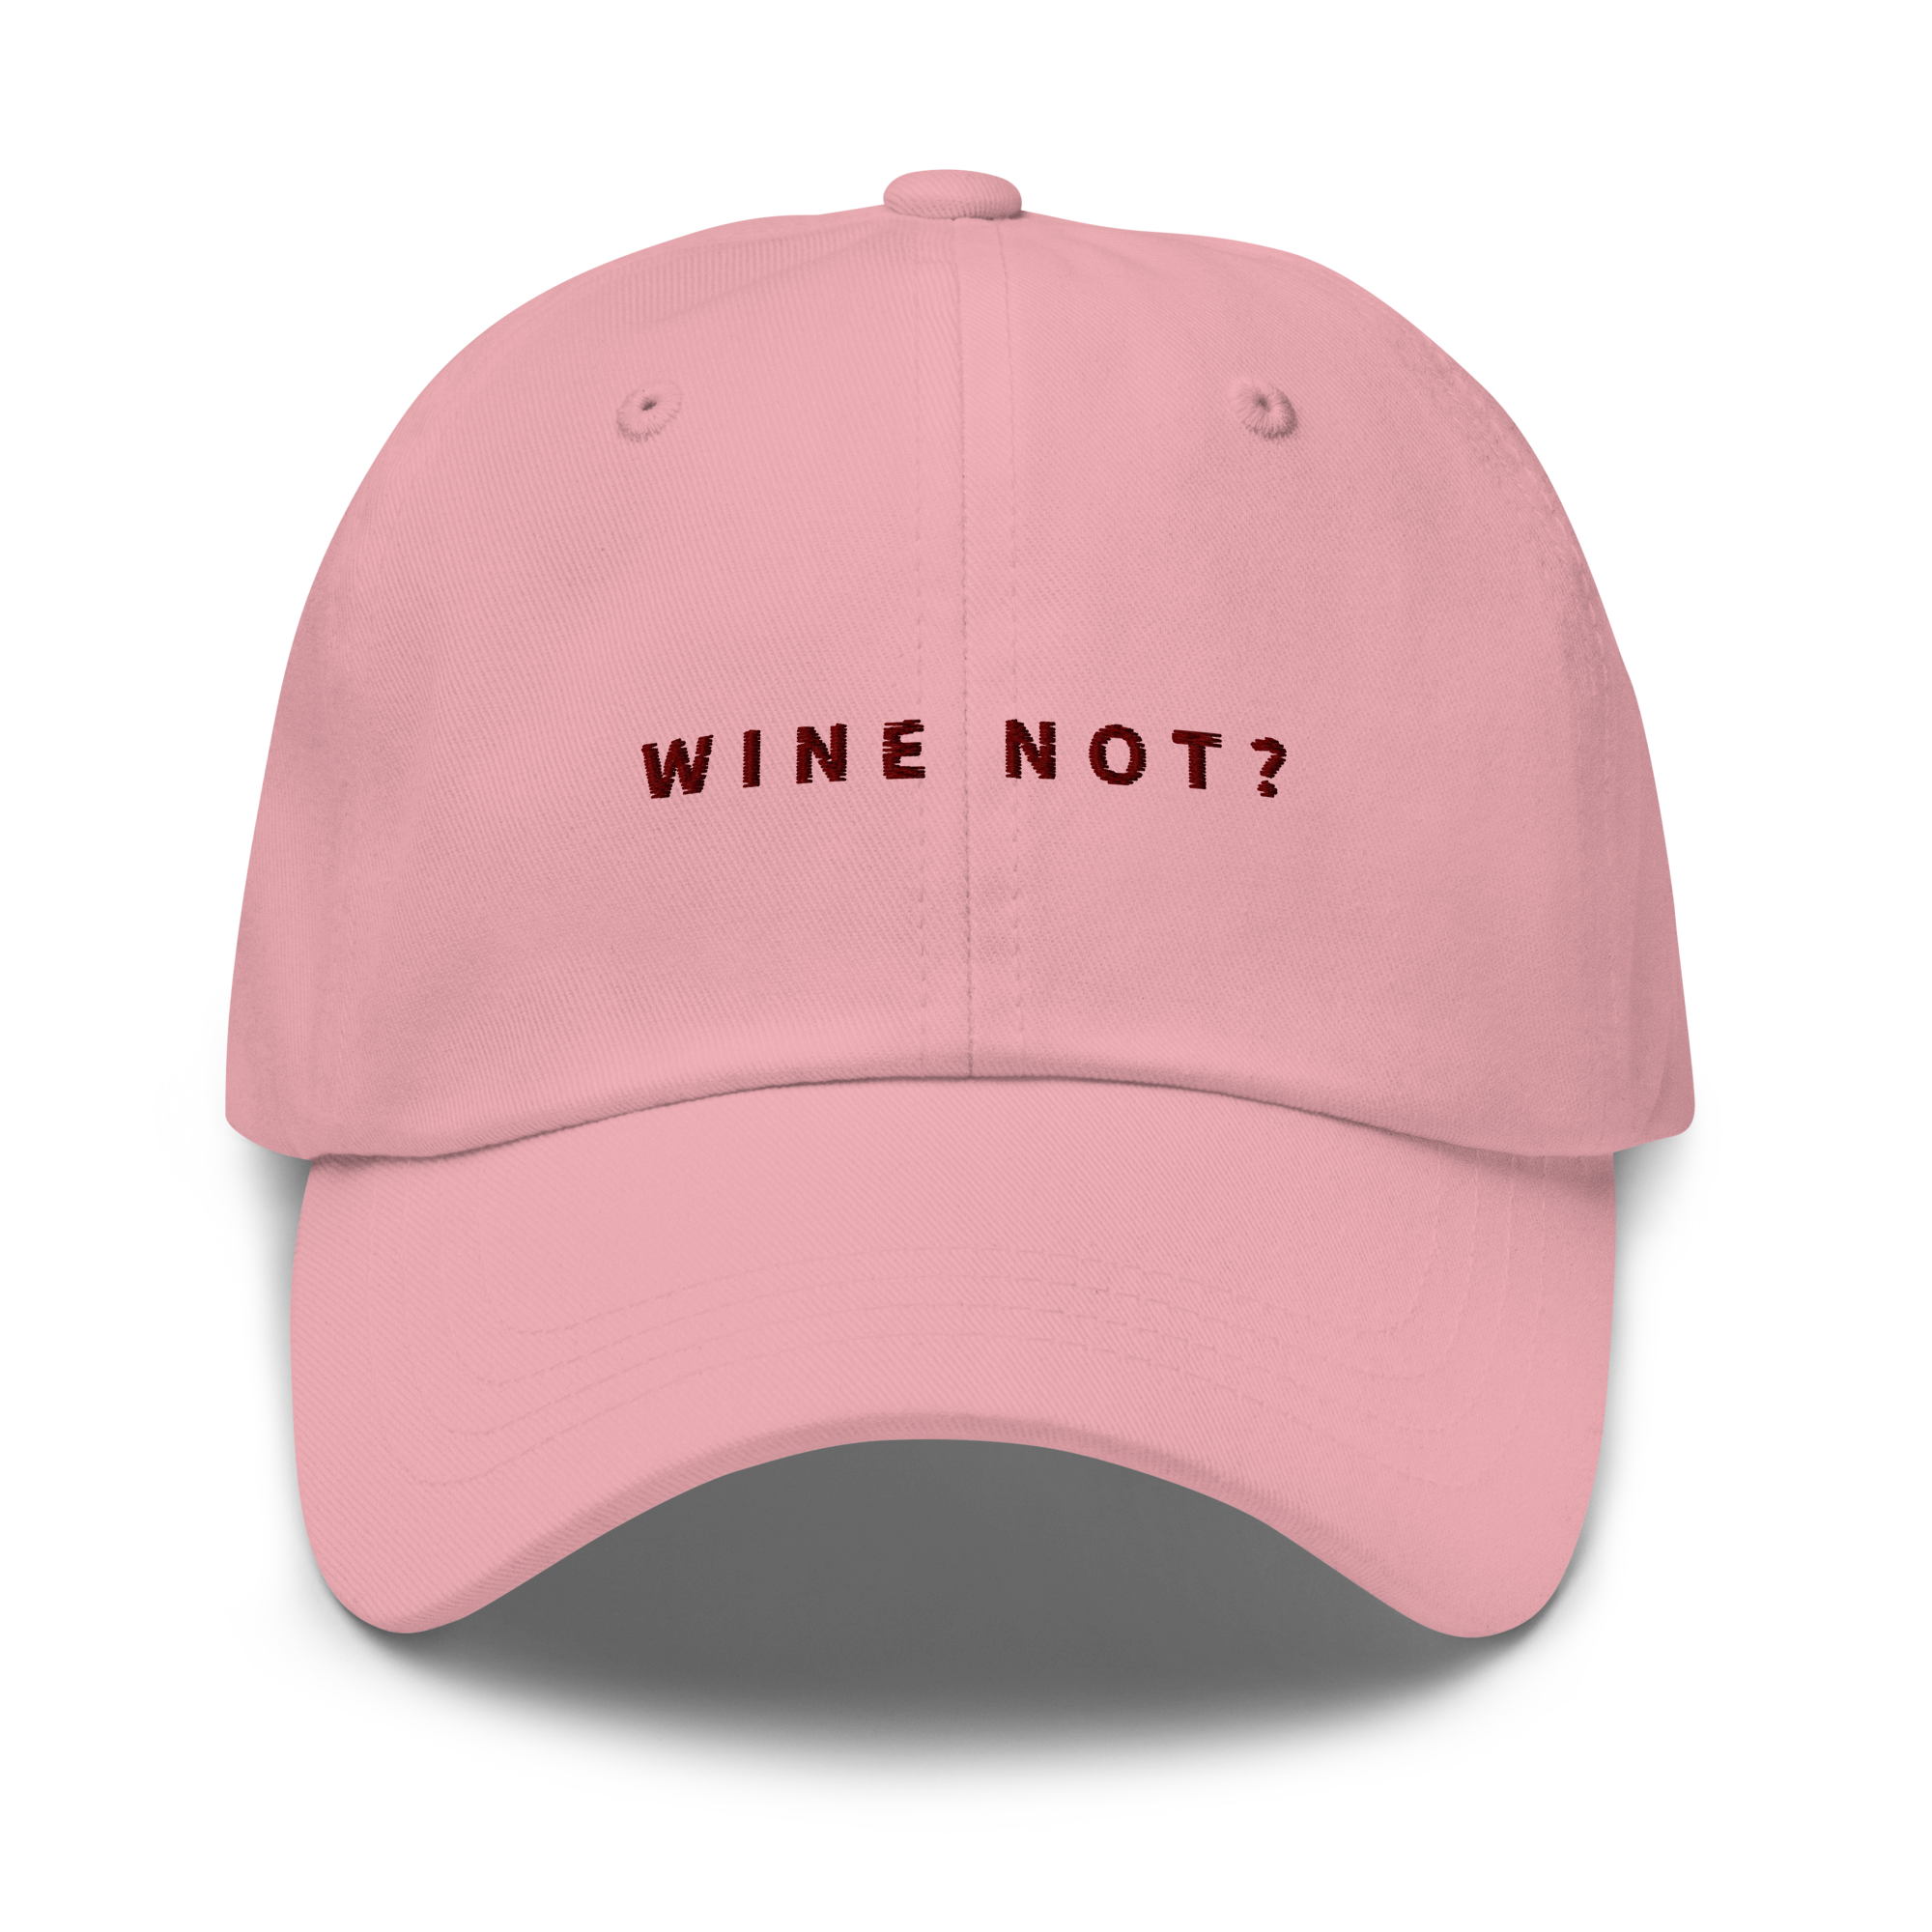 Wine not? Cap